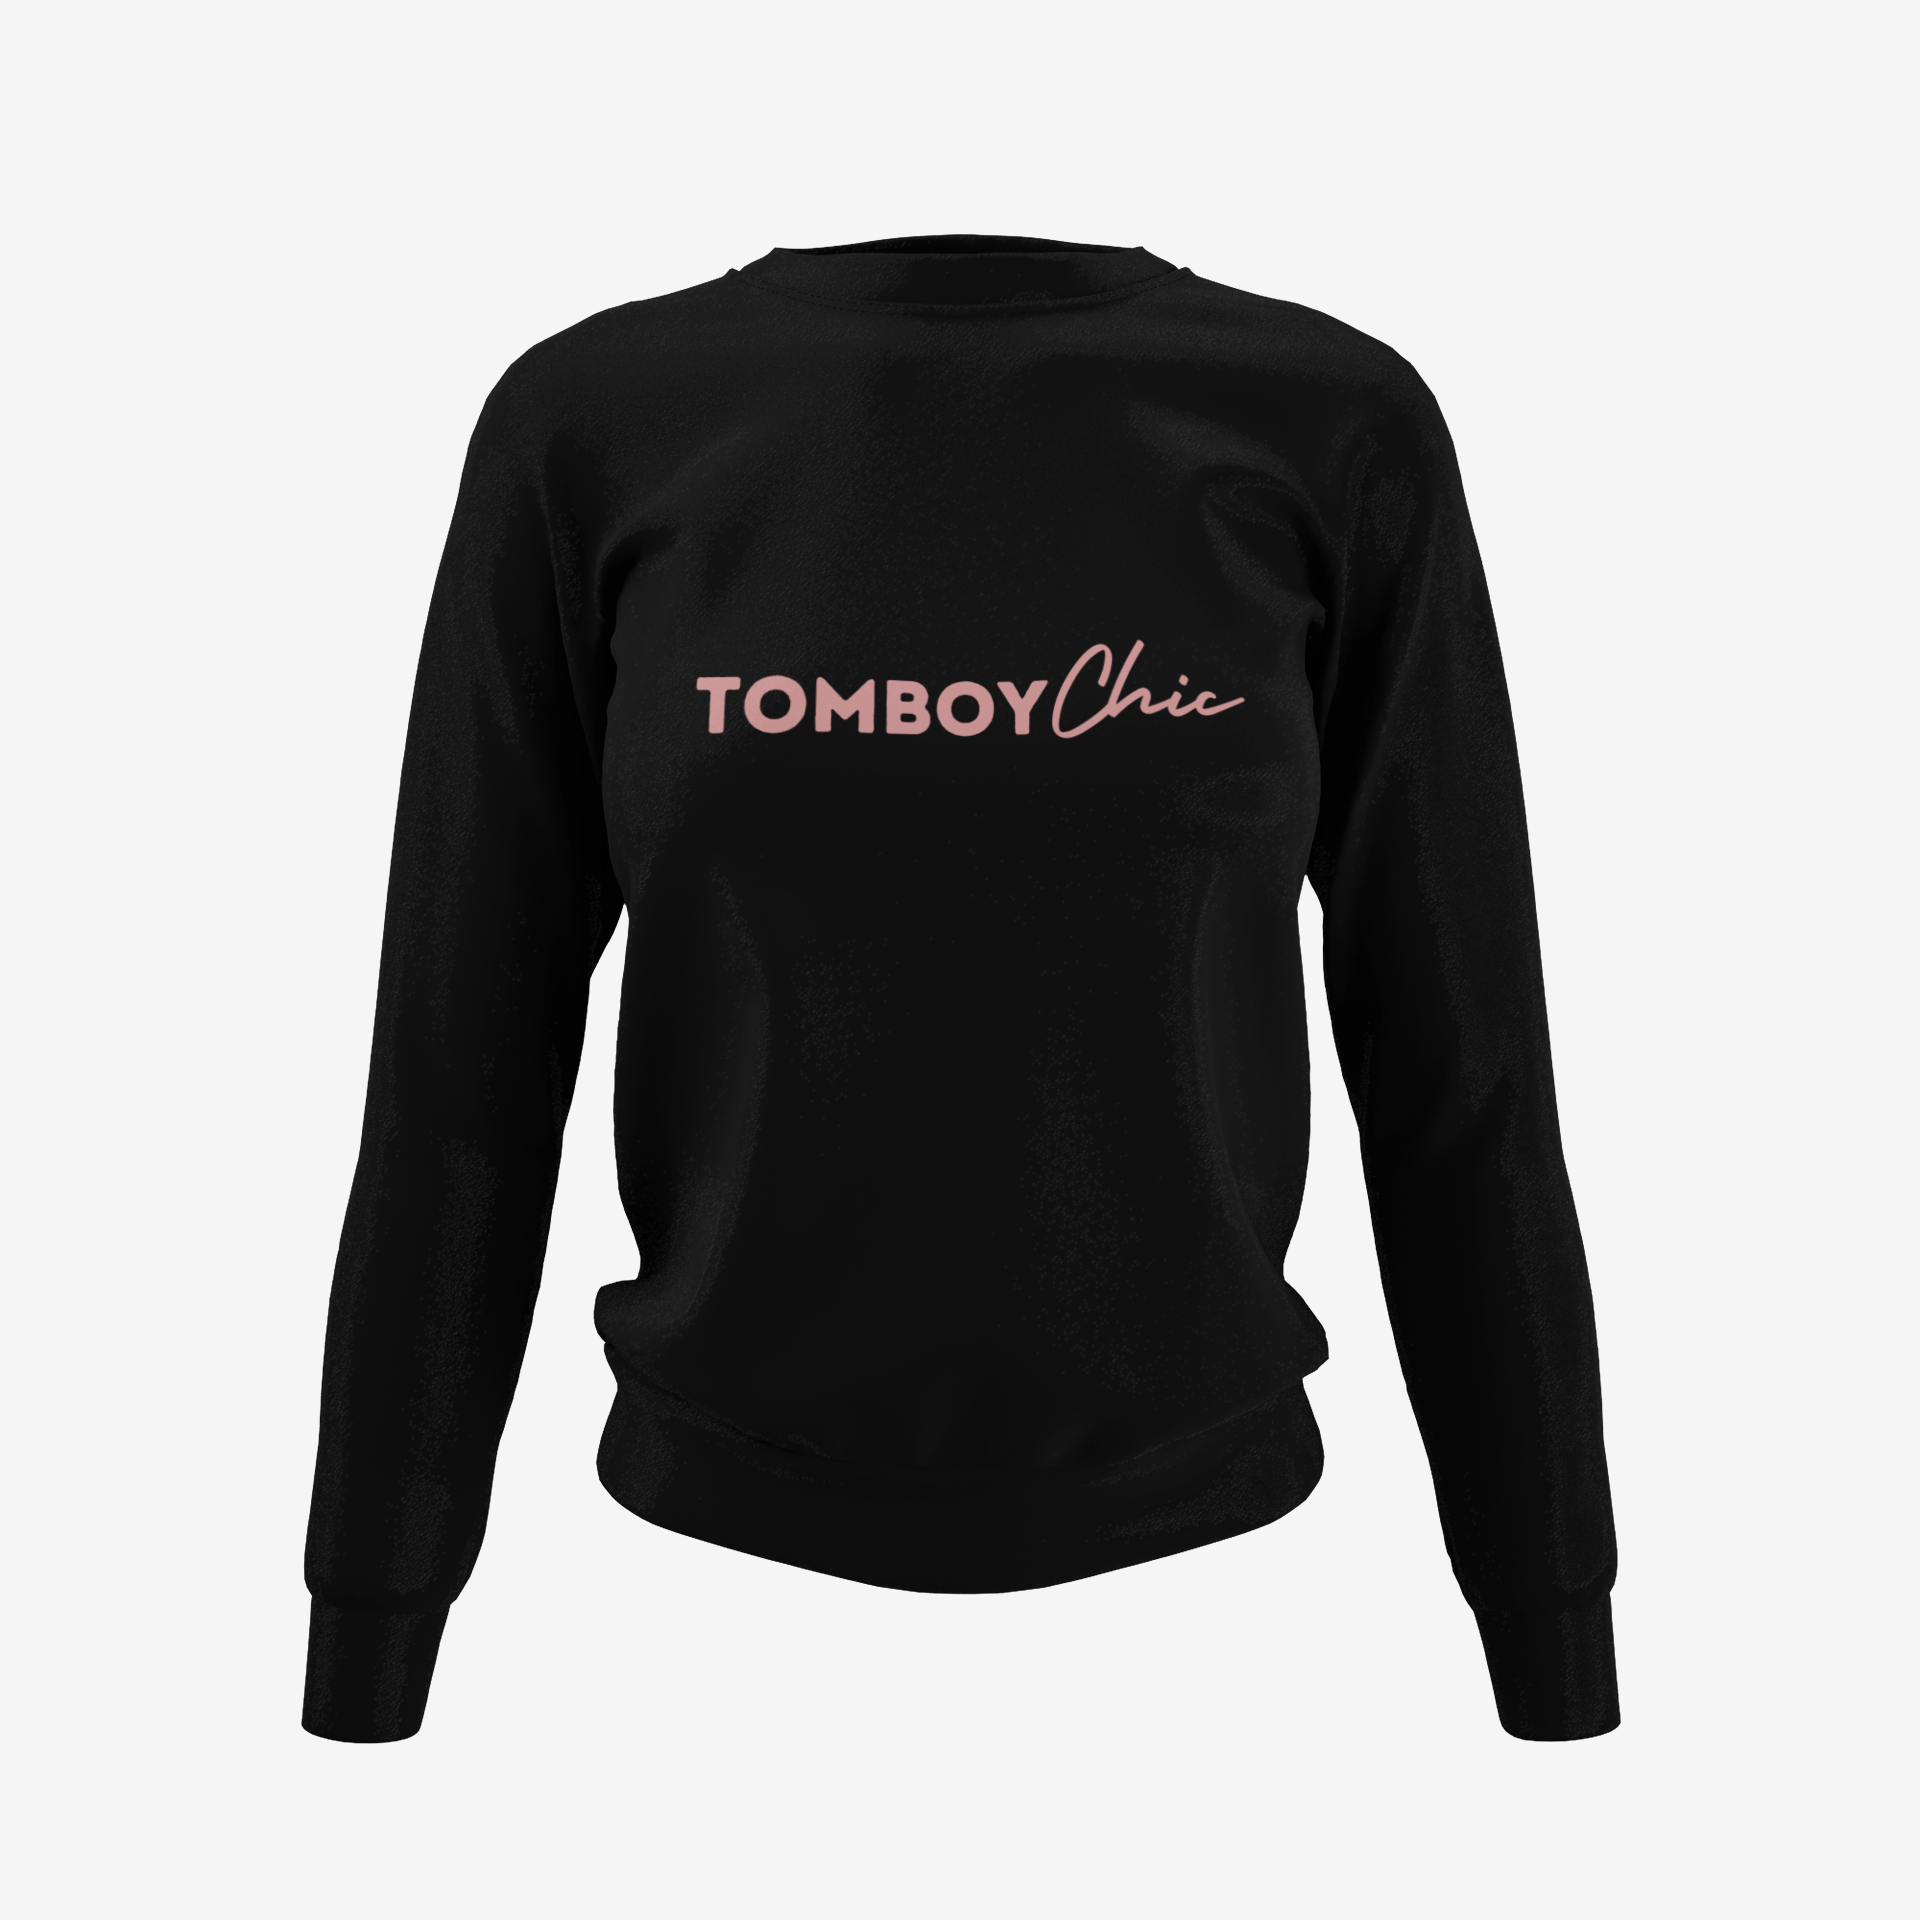 Tomboy Chic Sweatshirt